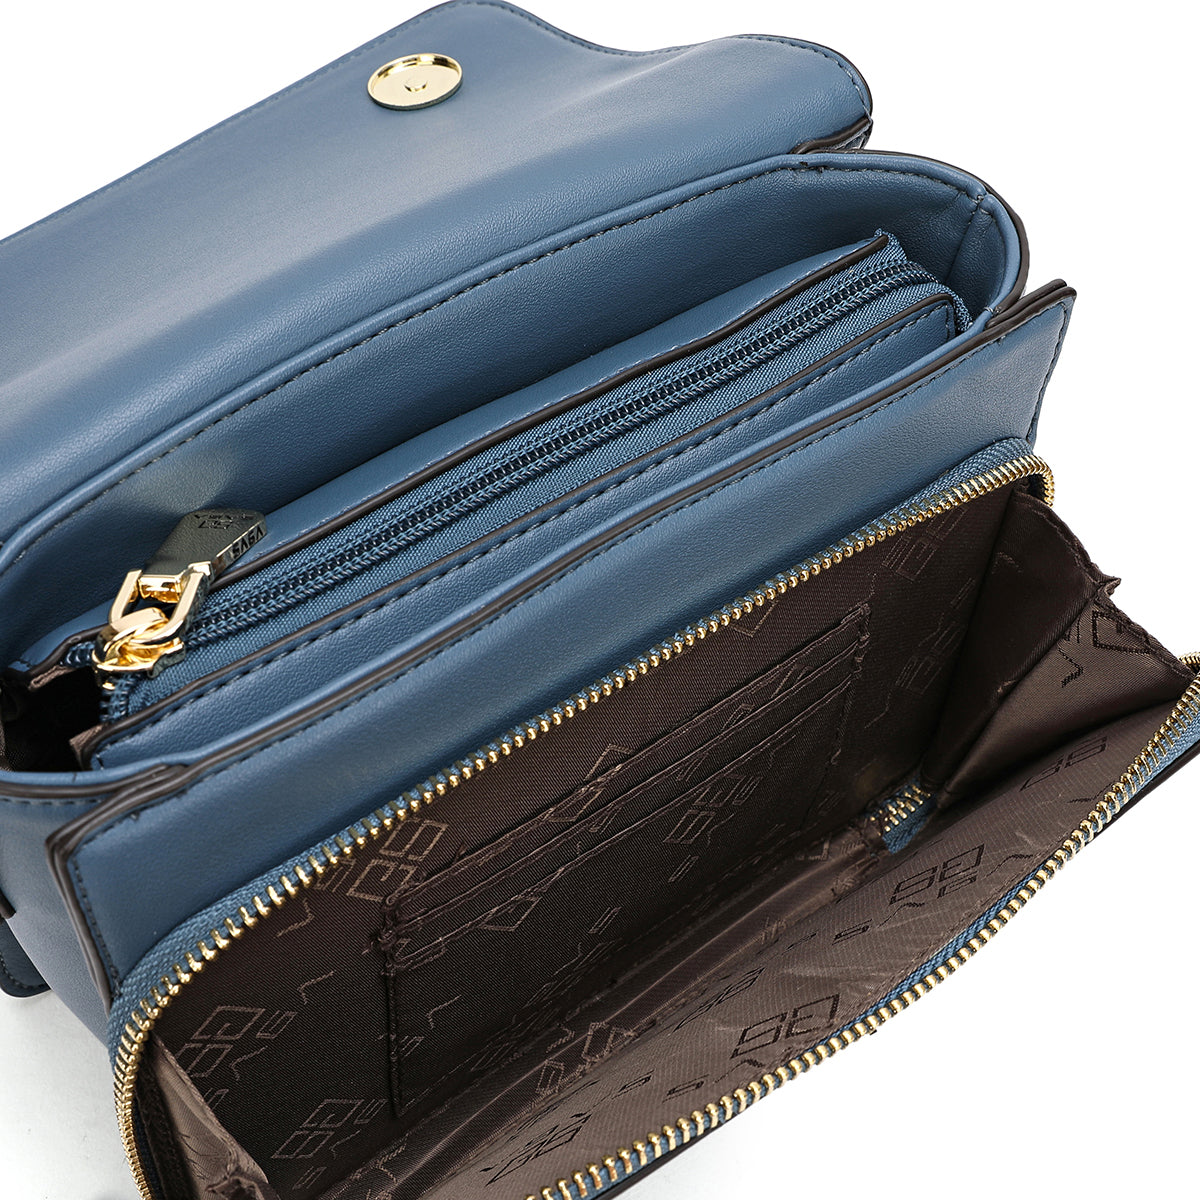 حقيبة يد نسائية بحزام قابل للفصل من ساغا عرض 20.5سم تتوفر بلونين